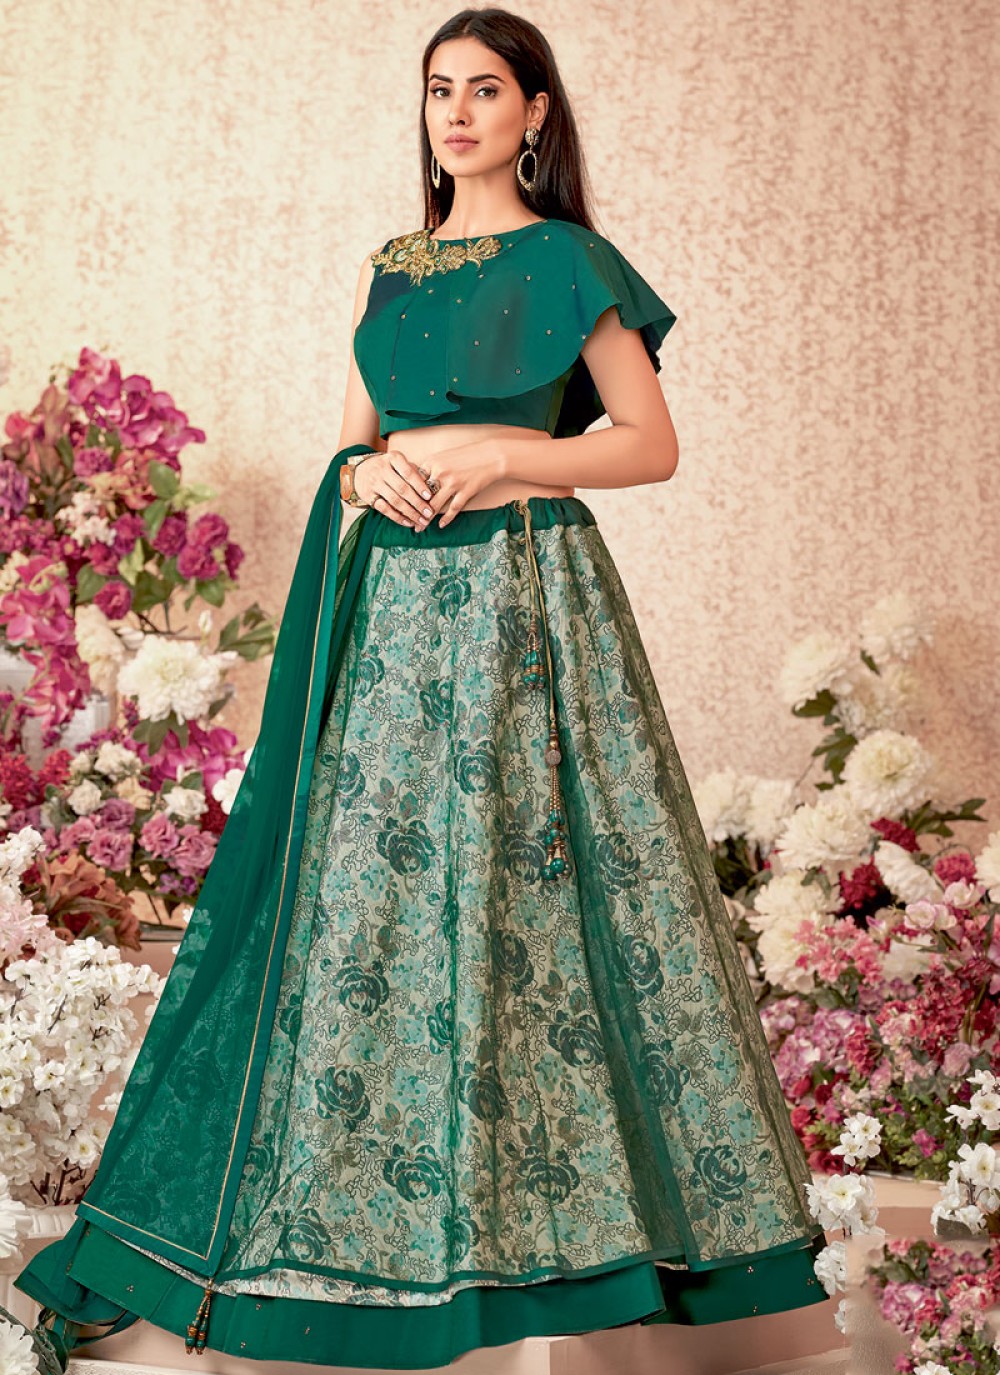 rajasthani style latest blouse designs for lehenga choli -843210187 |  Heenastyle